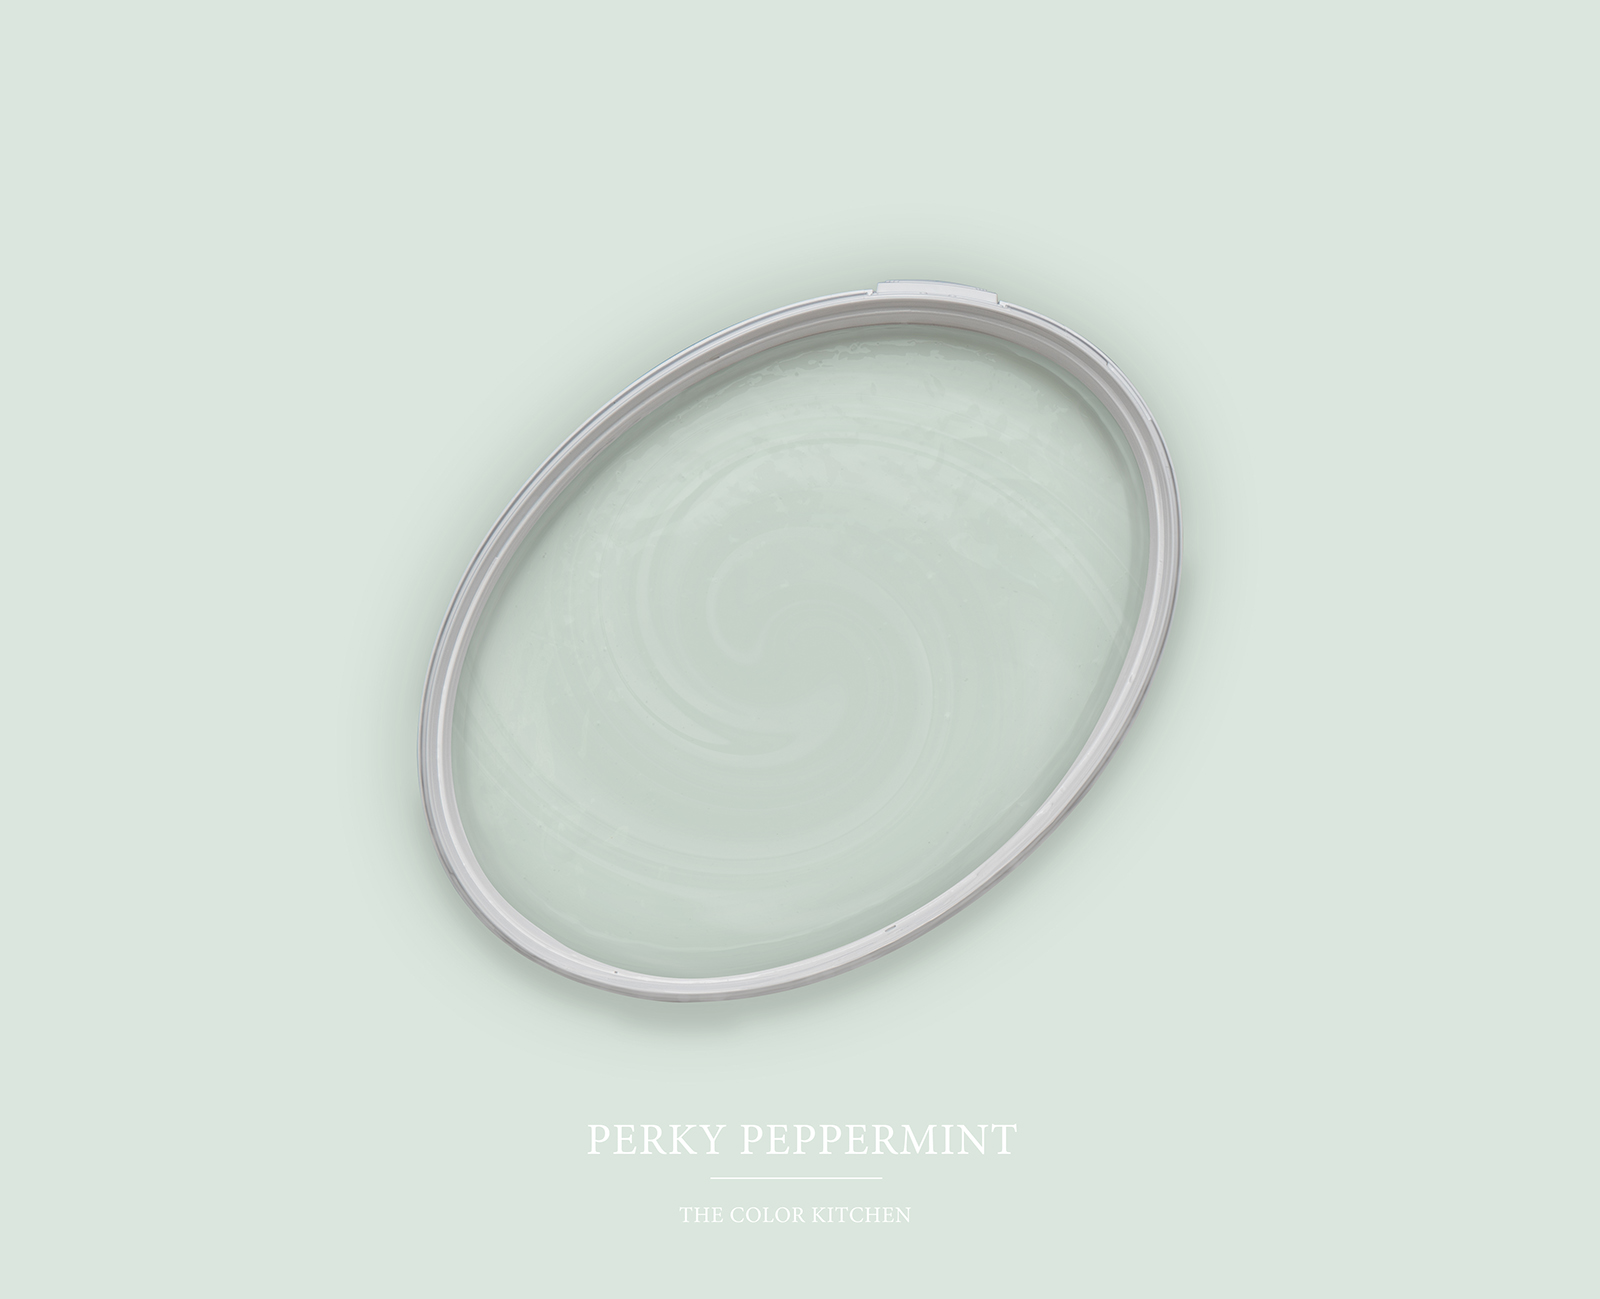 Wall Paint TCK3000 »Perky Peppermint« in a light mint shade – 5.0 litre
